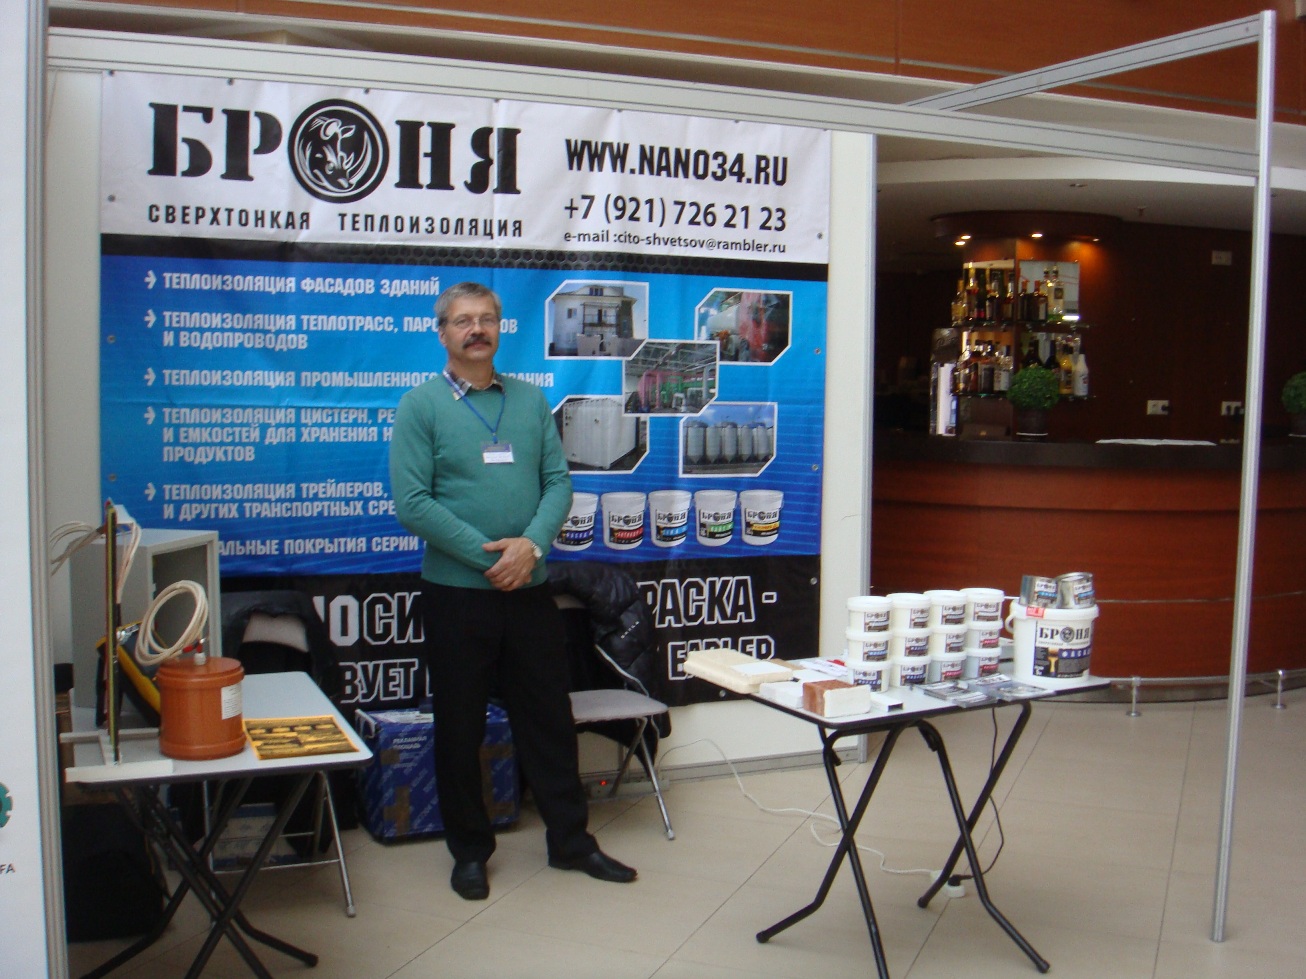 XVI Международная выставка «Энергетика Карелии - 2015» (г. Петрозаводск)